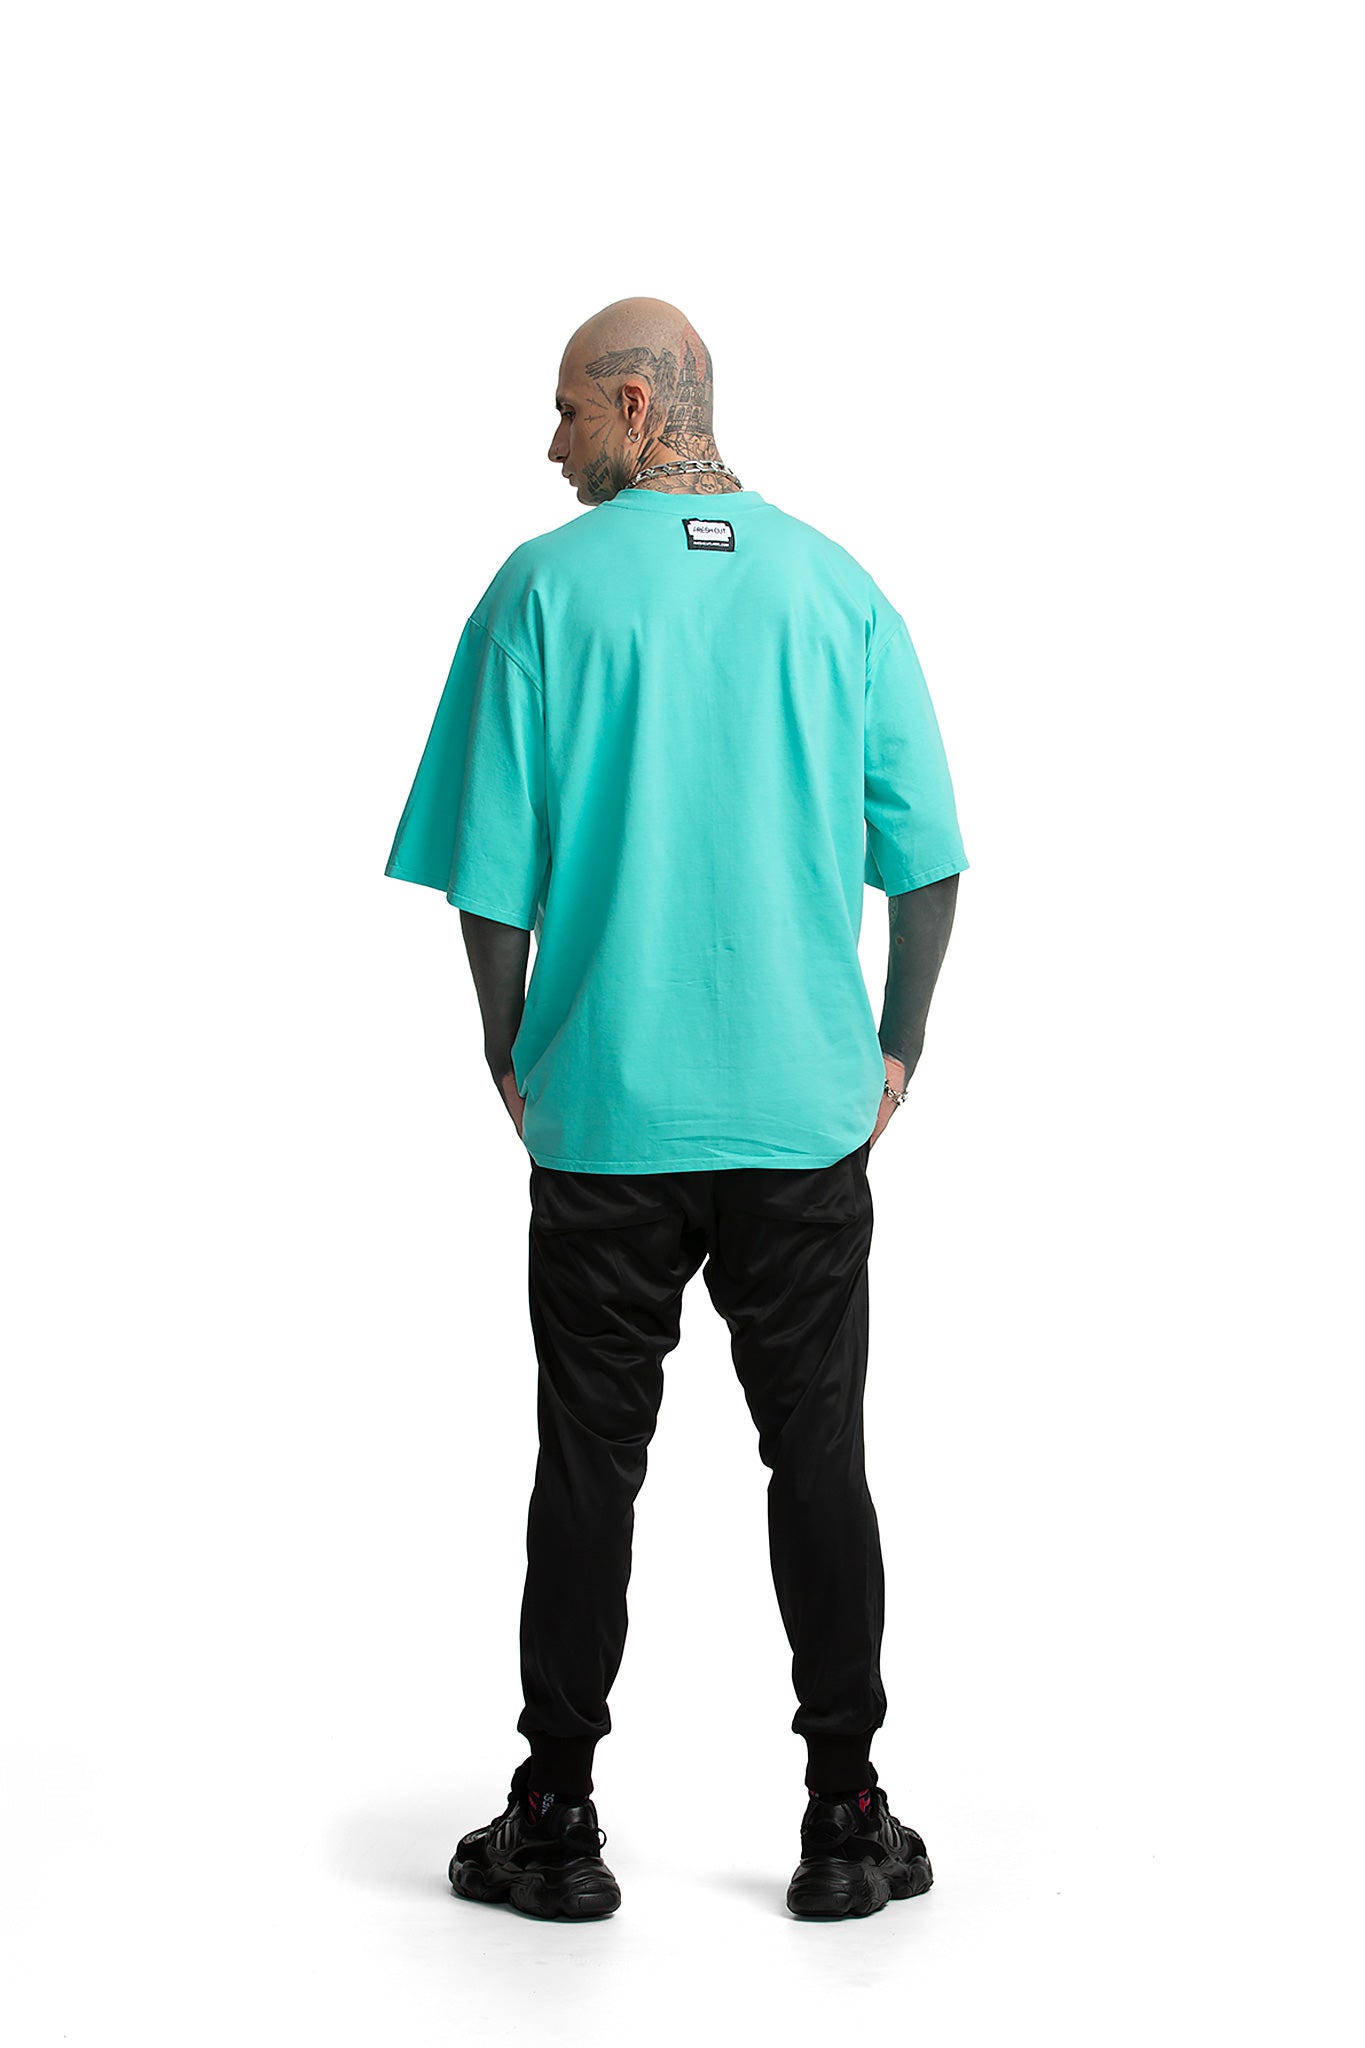 Maneki Neko oversized unisex T-shirt [turquoise]